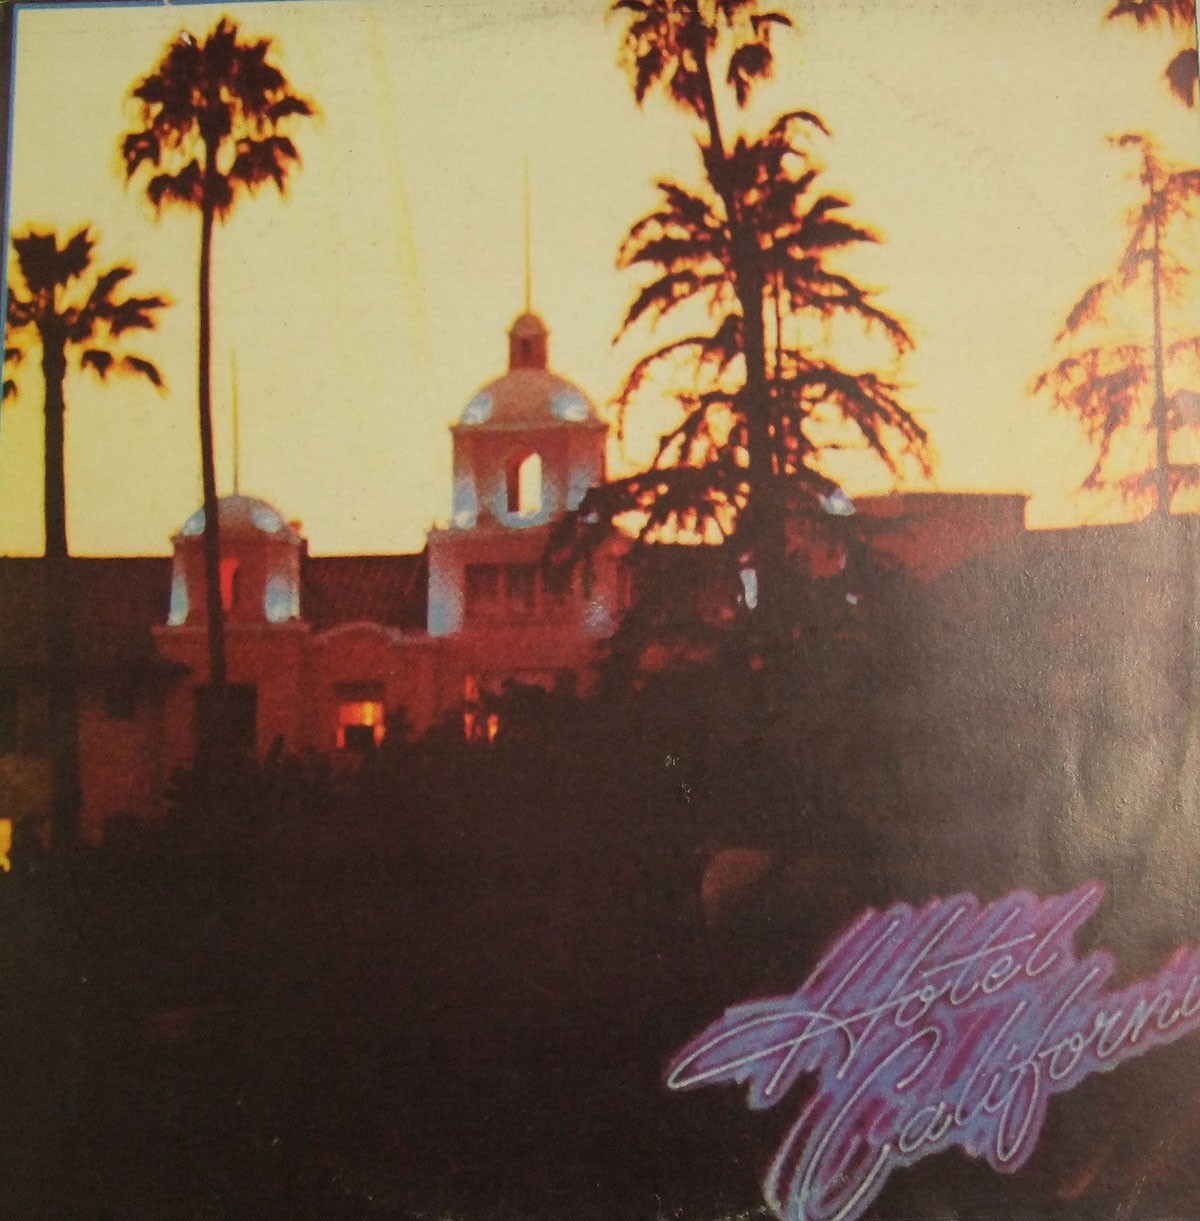 Couverture de l'album "Hotel California" des Eagles